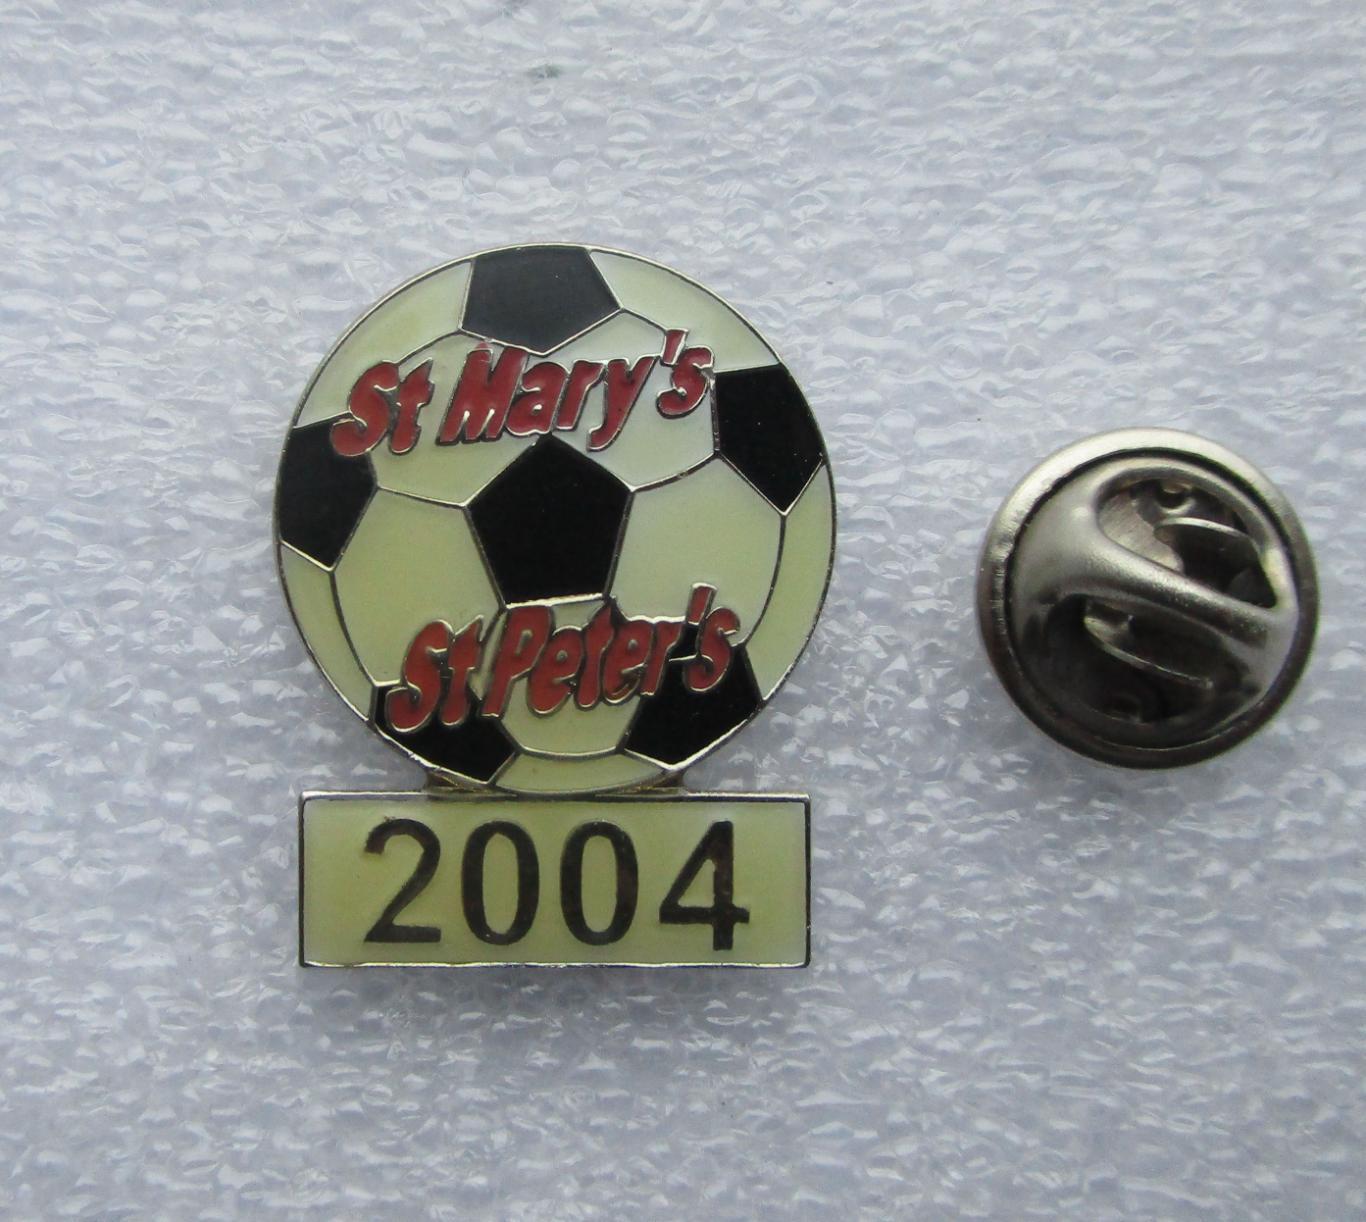 Значки. Спорт. Футбол. Новозеландский футбольный клуб St Mary's/St. Peter's 2004